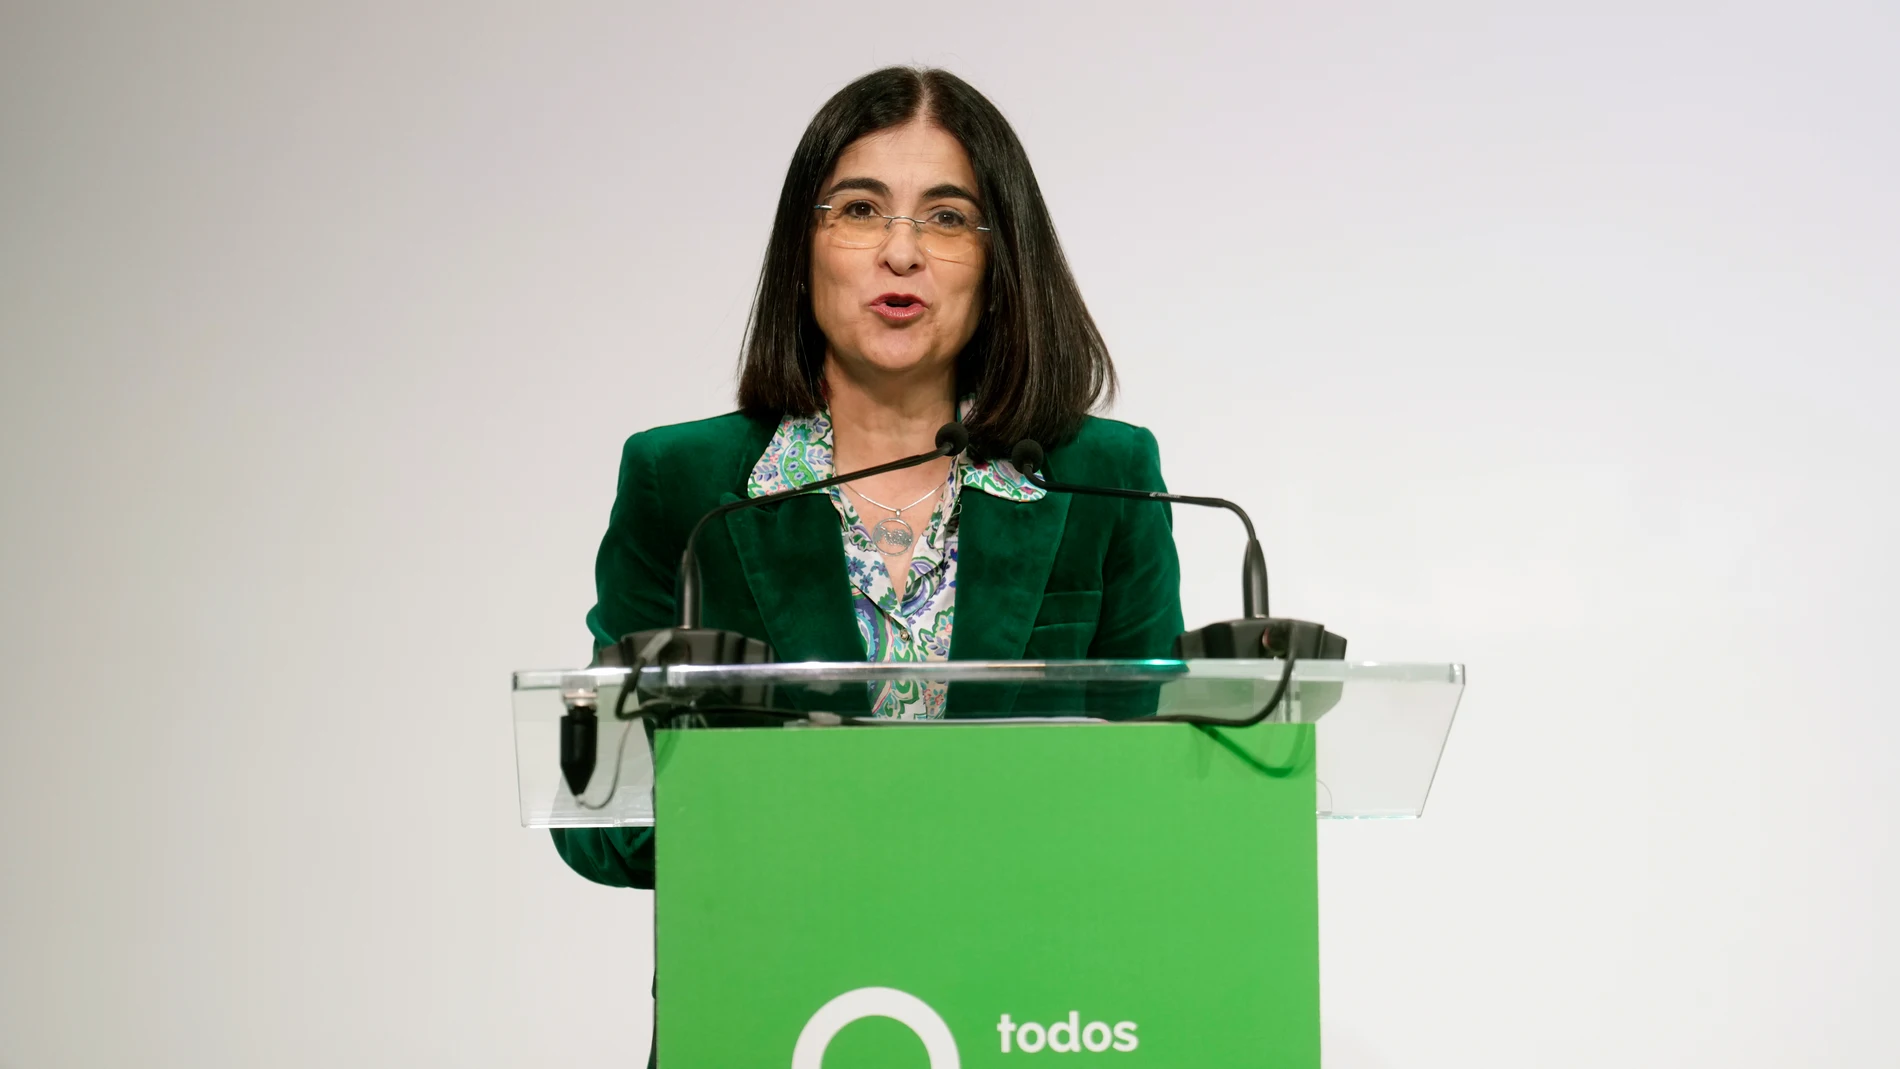 La ministra de Sanidad, Carolina Darias, da un discurso durante la presentación en Madrid de la campaña "Todos contra el cáncer